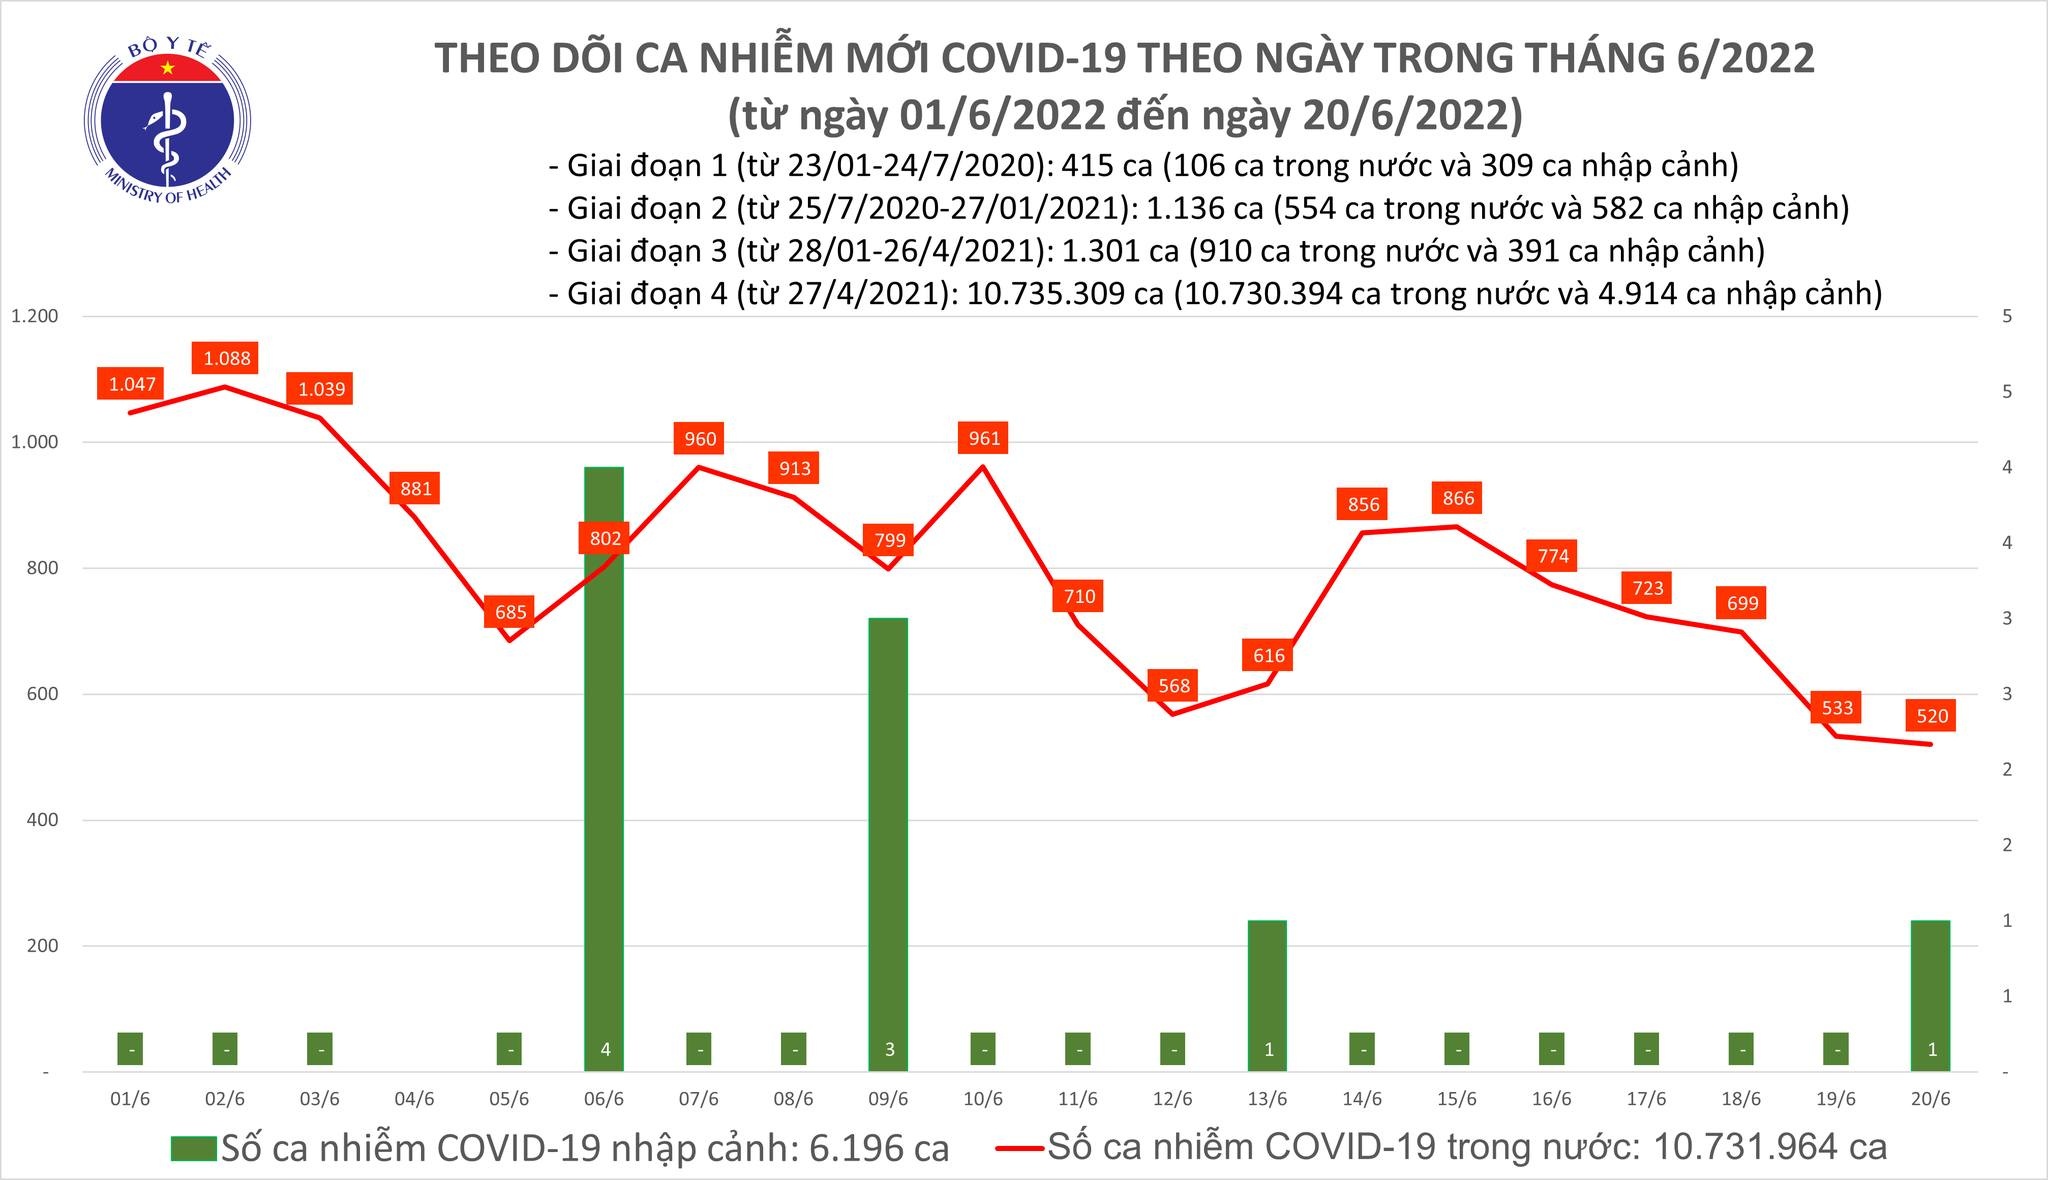 Việt Nam ghi nhận 520 ca mắc mới COVID-19 trong ngày 20/6